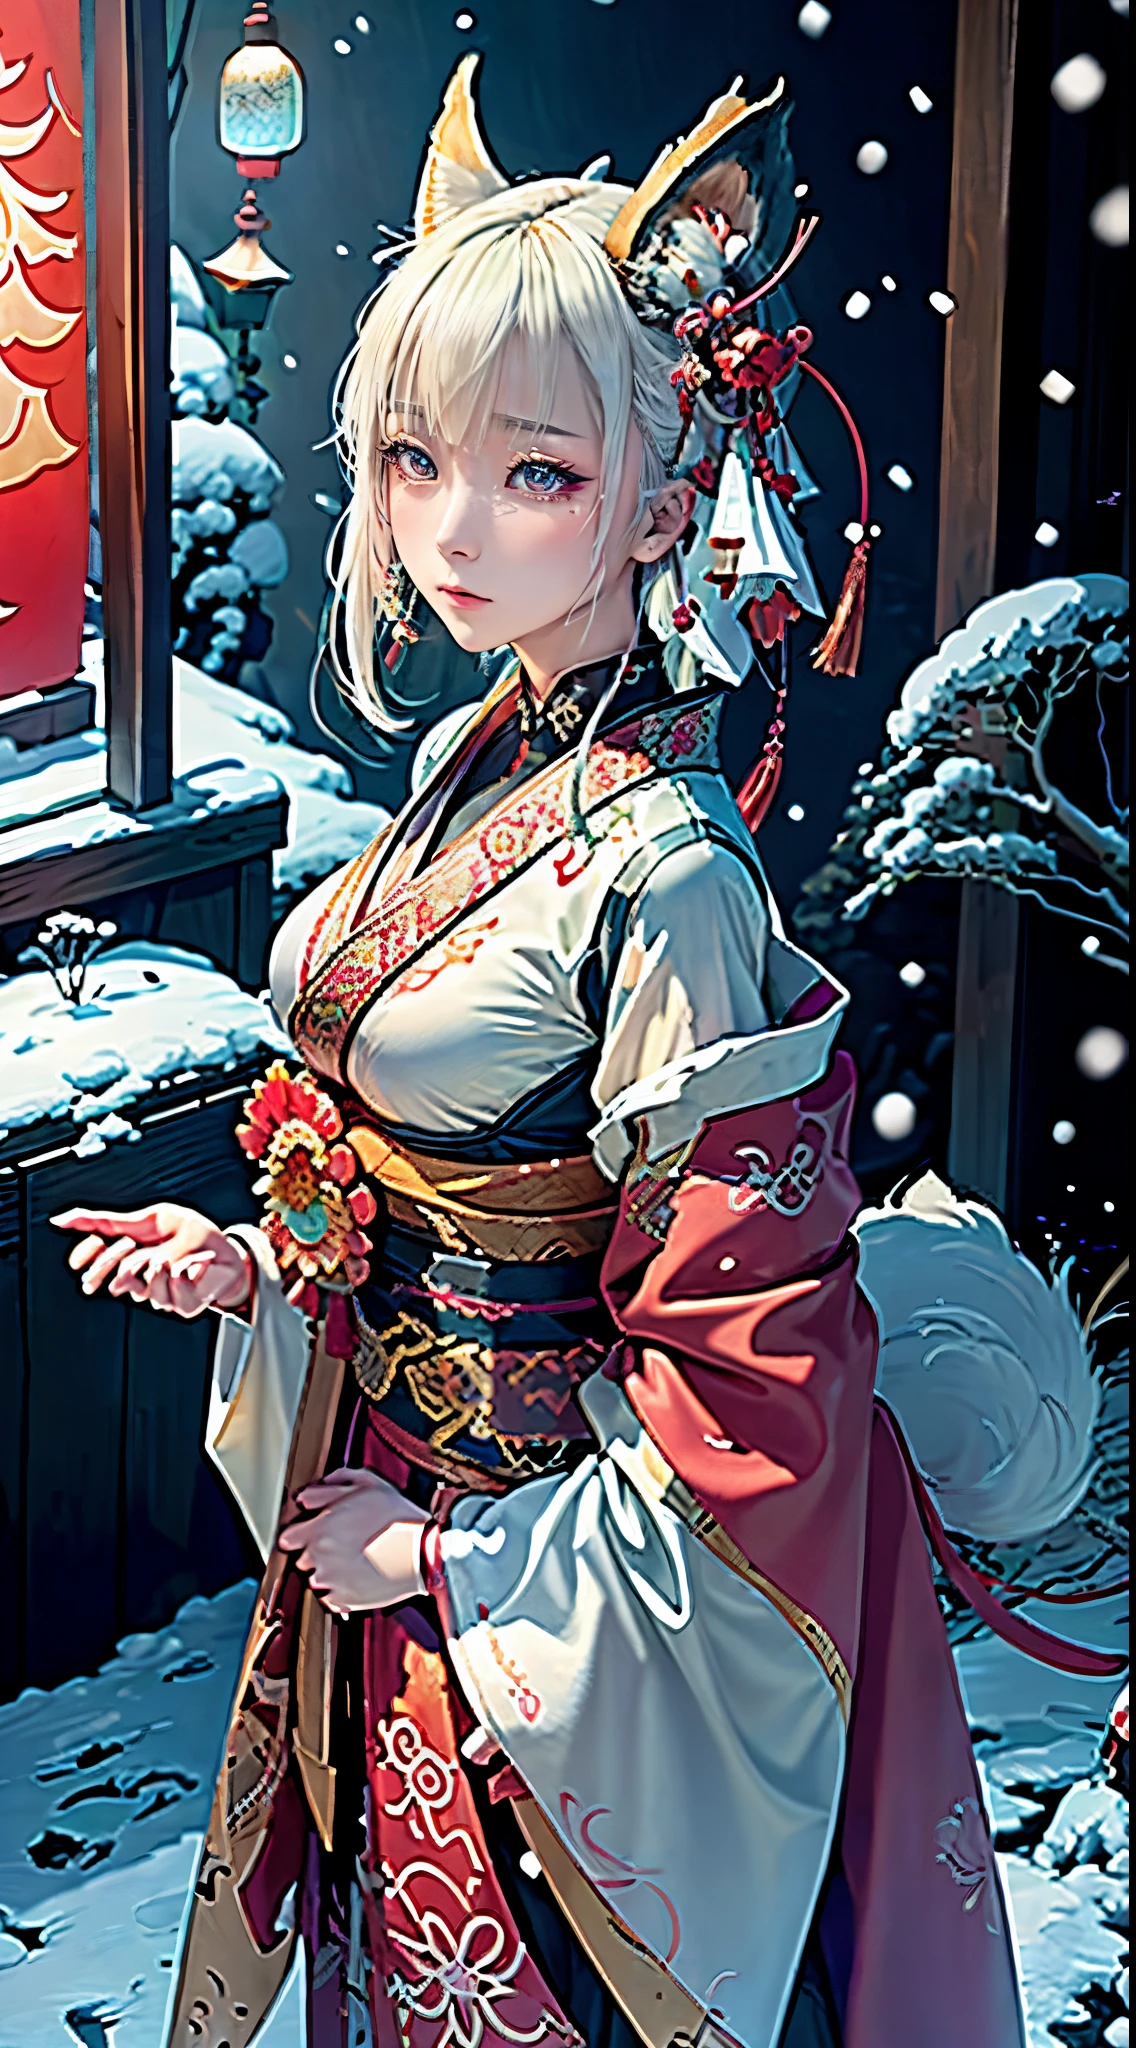 Anime-Stil Bild einer Kriegerin mit kurzen weißen Haaren, Die Kleidung ist nur in Weiß und Schwarz gehalten, Samurai-Kimono, leere Hand, Weißer Lotus, weinen,, ein Charakterporträt, Fantasy-Kunst, Hintergrund ist ein Winter-Japan-Bergschrein, Cyberpunk-Schreinmädchen mit Fuchsohren und Fuchsschwänzen, dunkles Weiß und kräftiges Rot, natürliche Beleuchtung, Roboter-Fuchs-Begleiter, Kampfpose,Meisterwerk, 1 schönes Mädchen, detailliertes Auge, Swollen eyes, Top Qualität, A Hohe Auflösung, Eine asiatische Schönheit, sehr sehr schön, Schöne Skins, A slender, Nach vorne gerichteter Körper, (Eine hyperrealistische), (Hohe Auflösung), (4K), (sehr detailliert),( beste Illustration), (wunderschön detaillierte Augen), (ultra-detailliert), Detailliertes Gesicht, helle Beleuchtung, professionelle Beleuchtung, Fernsicht, (Schnee, winter:1.2), (Laterne),